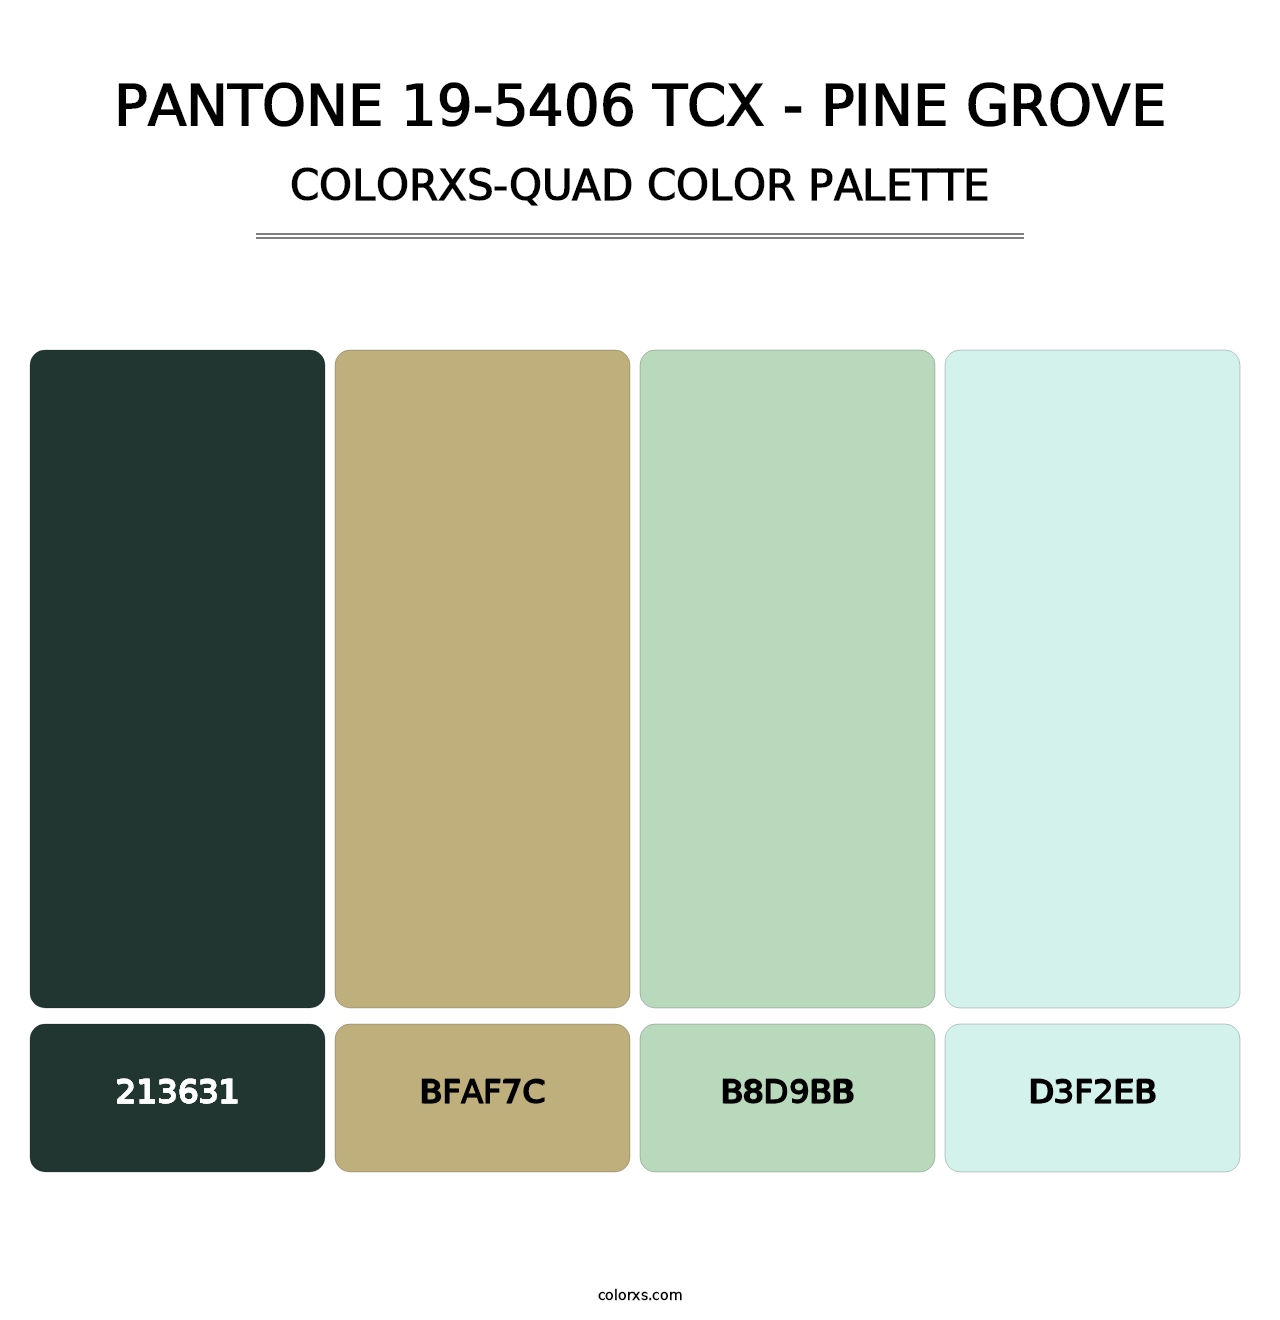 PANTONE 19-5406 TCX - Pine Grove - Colorxs Quad Palette